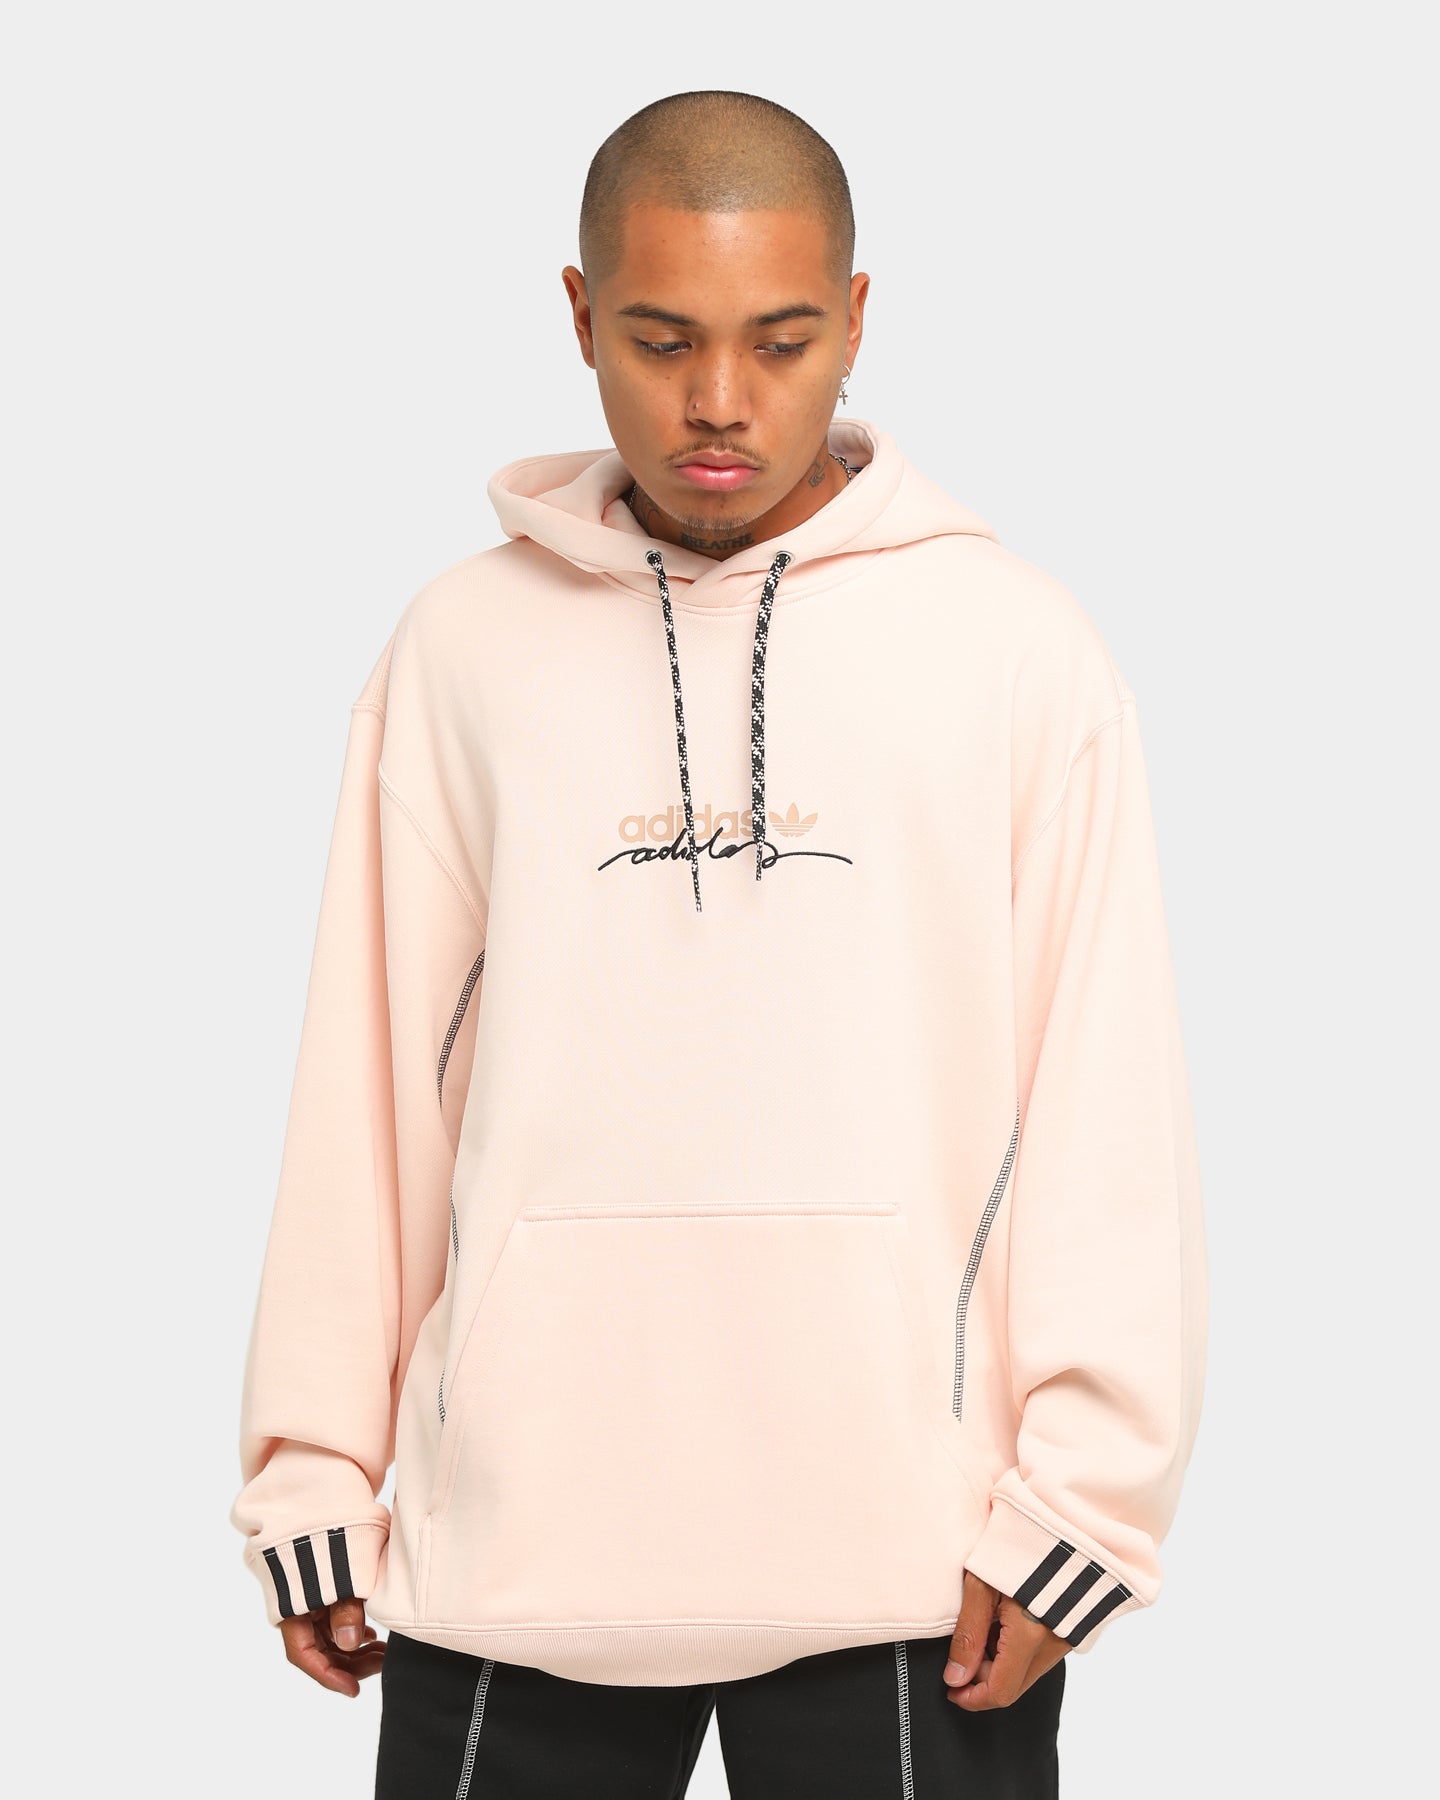 pink hoodie mens adidas